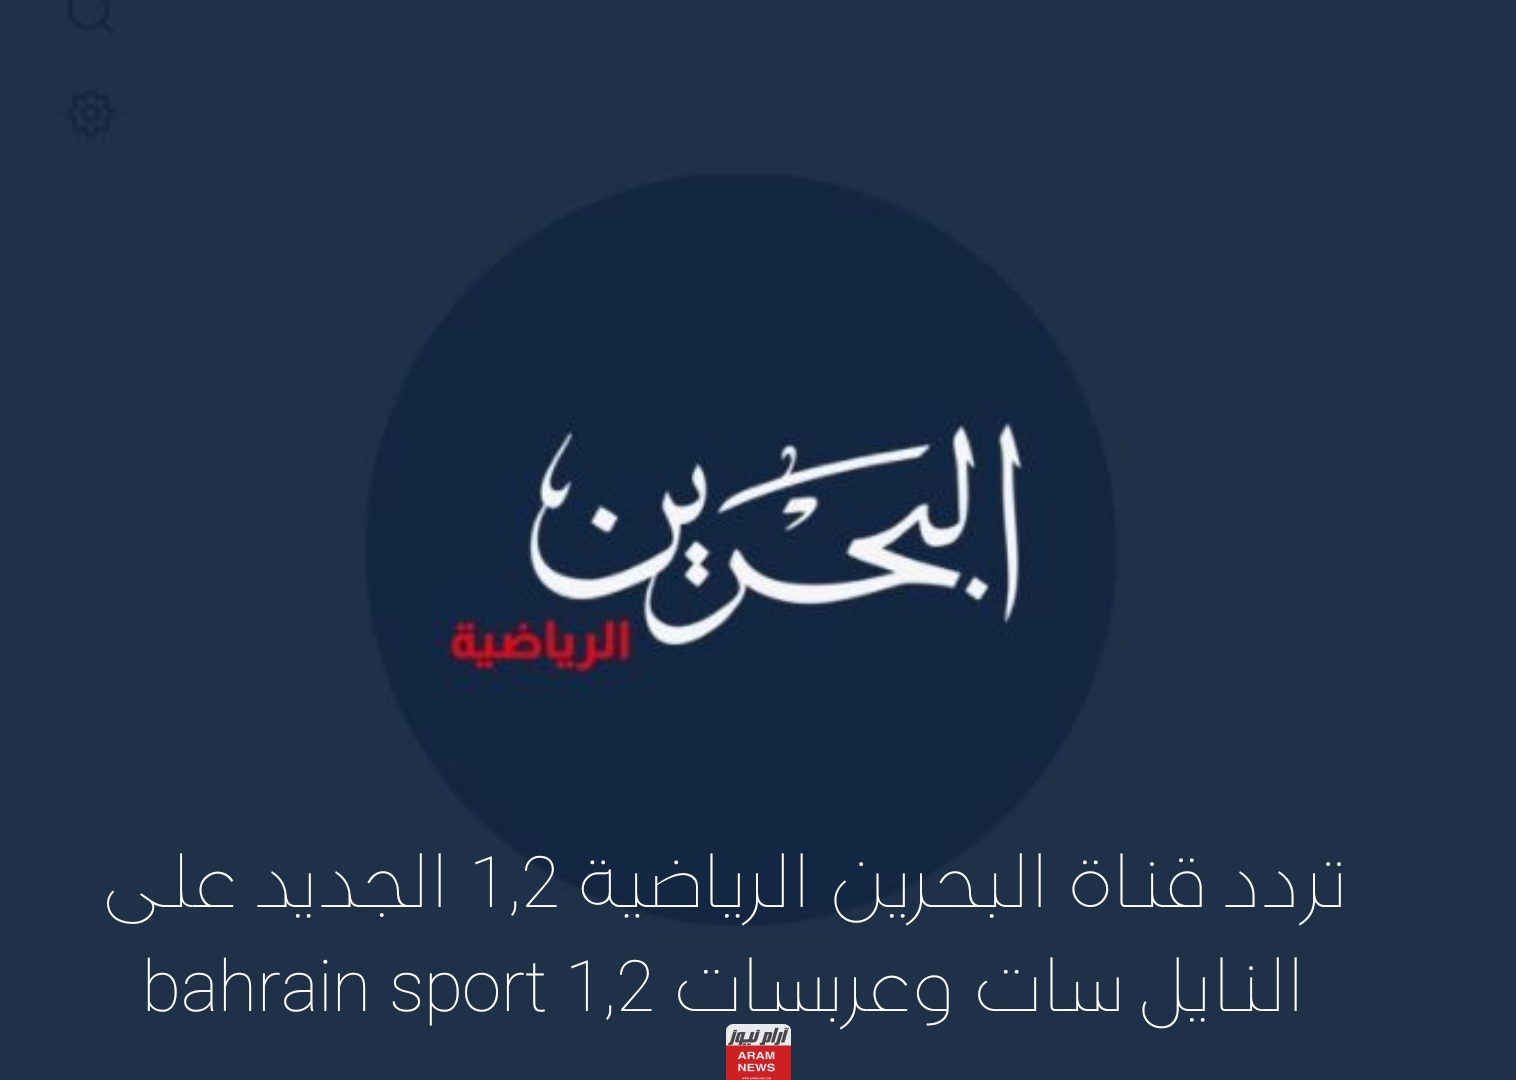 تردد قناة البحرين الرياضية 1,2 الجديد على النايل سات وعربسات bahrain sport 1,2